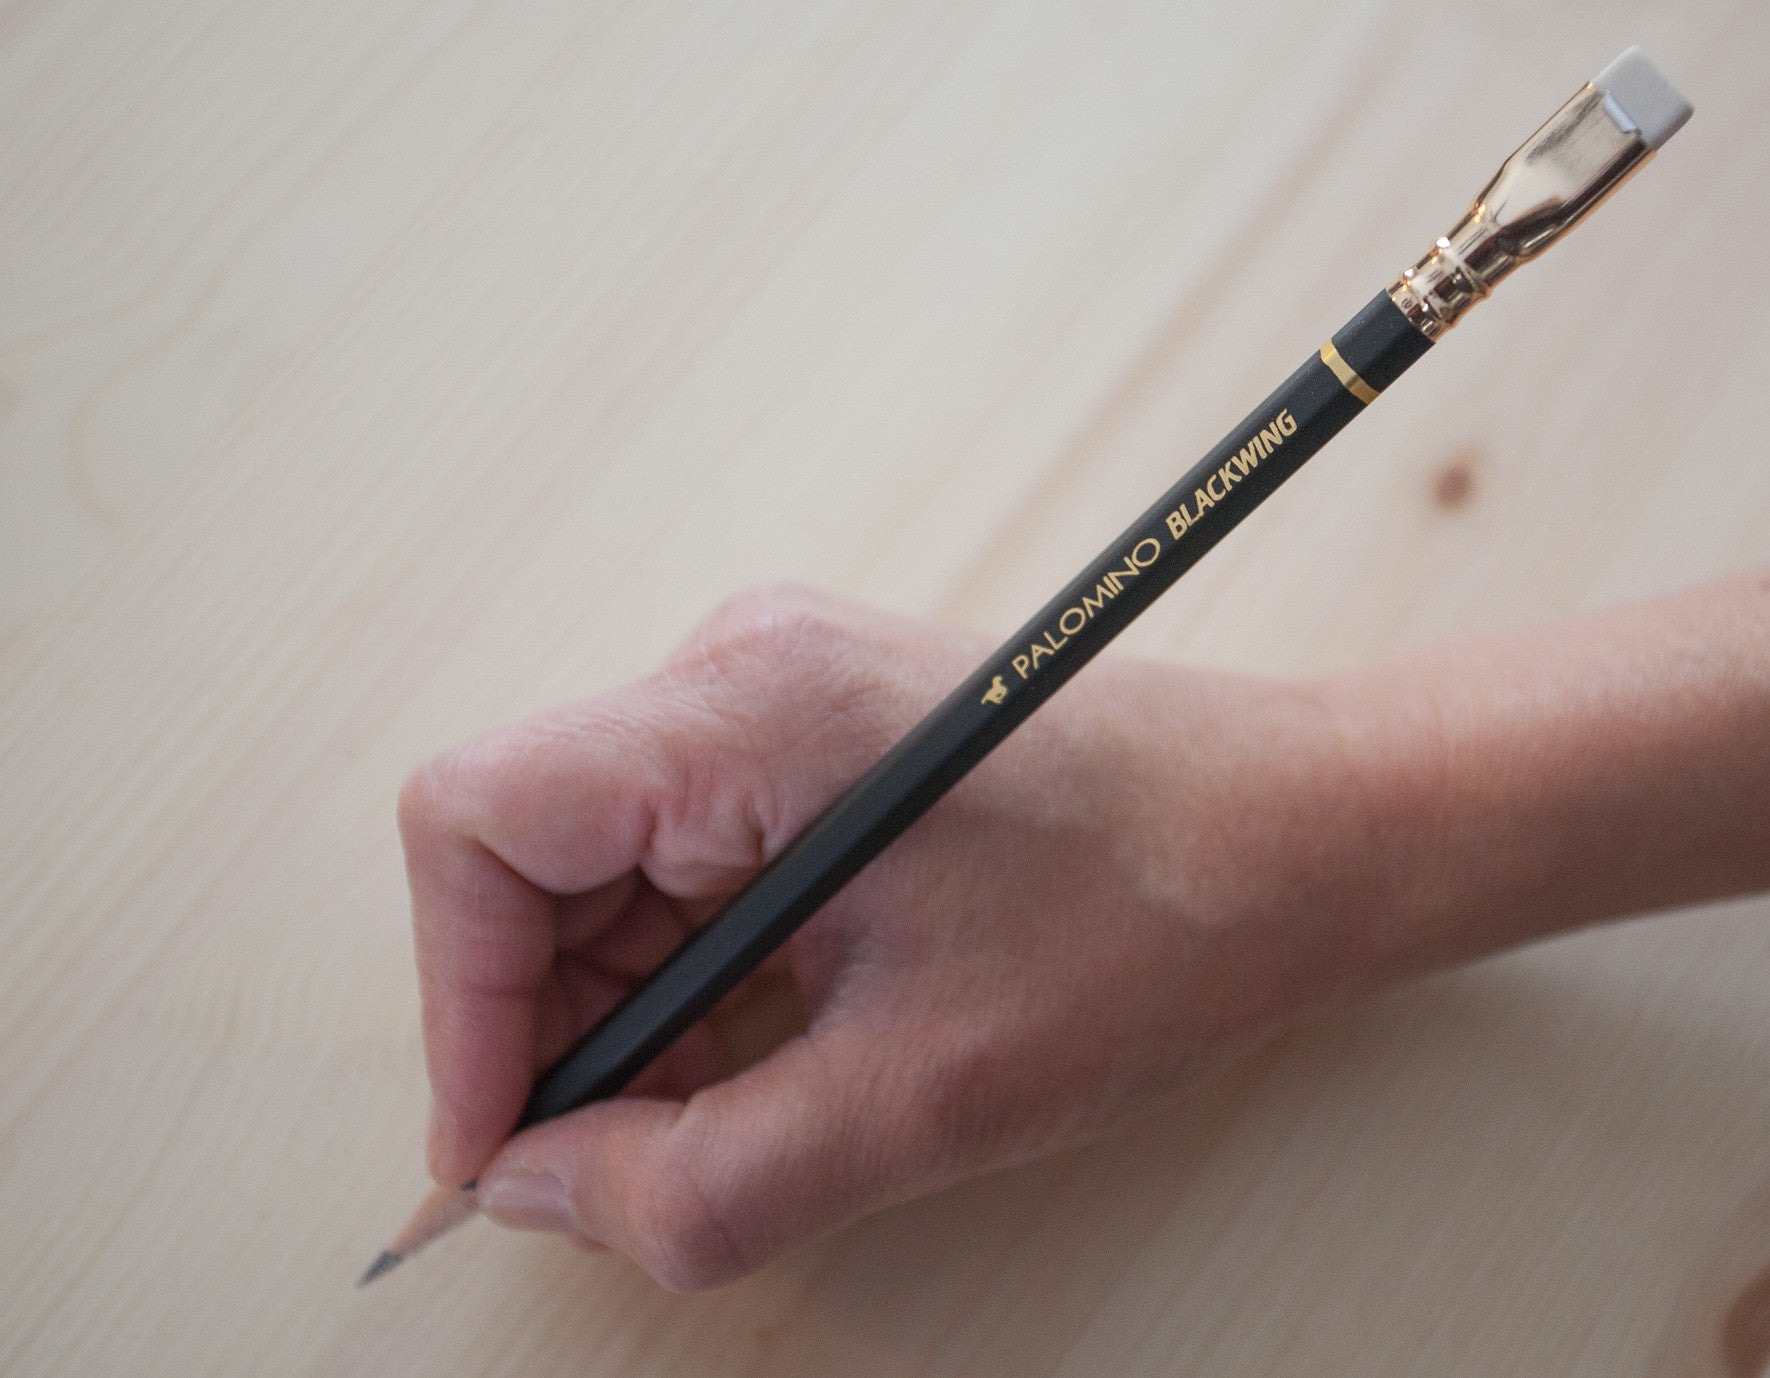 Palomino Blackwing Pencils - UI Stencils